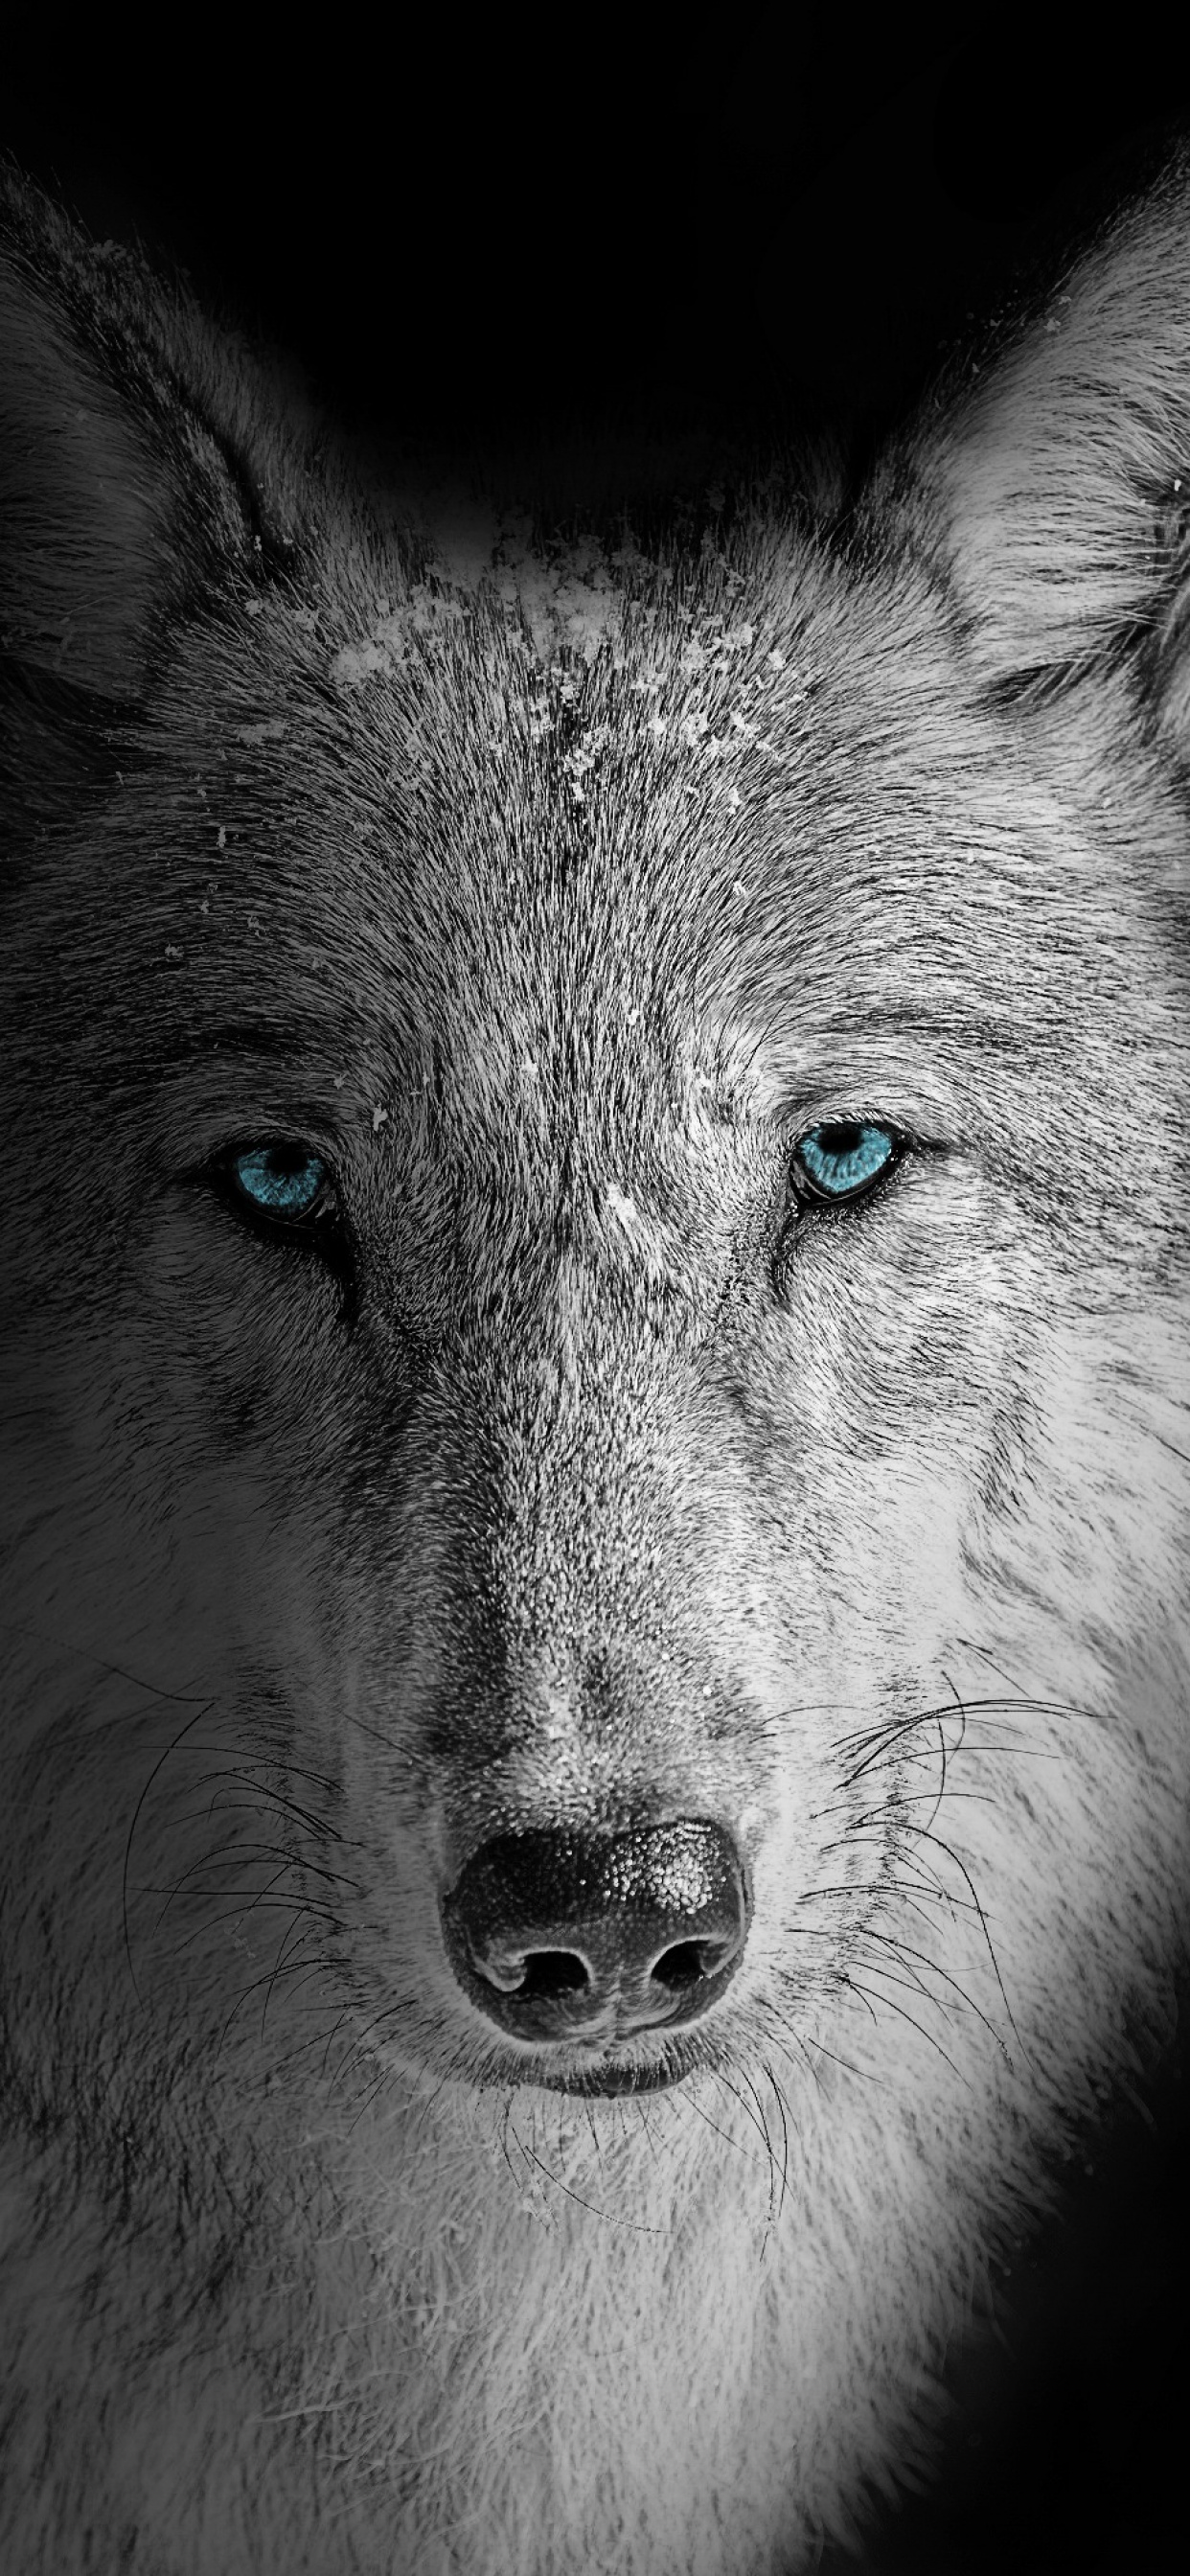 White wolf wallpaper: Thú hoang đã từ lâu đã trở thành biểu tượng về sự tự do đầy hoang dã. Đến ngay với bức ảnh white wolf wallpaper, bạn sẽ được chứng kiến con sói trắng đang thảnh thơi nằm trên tảng đá, toát lên vẻ đẹp mạnh mẽ và đầy uy lực. Đừng bỏ lỡ cơ hội được tận hưởng trọn vẹn vẻ đẹp của phong cảnh thiên nhiên này. 